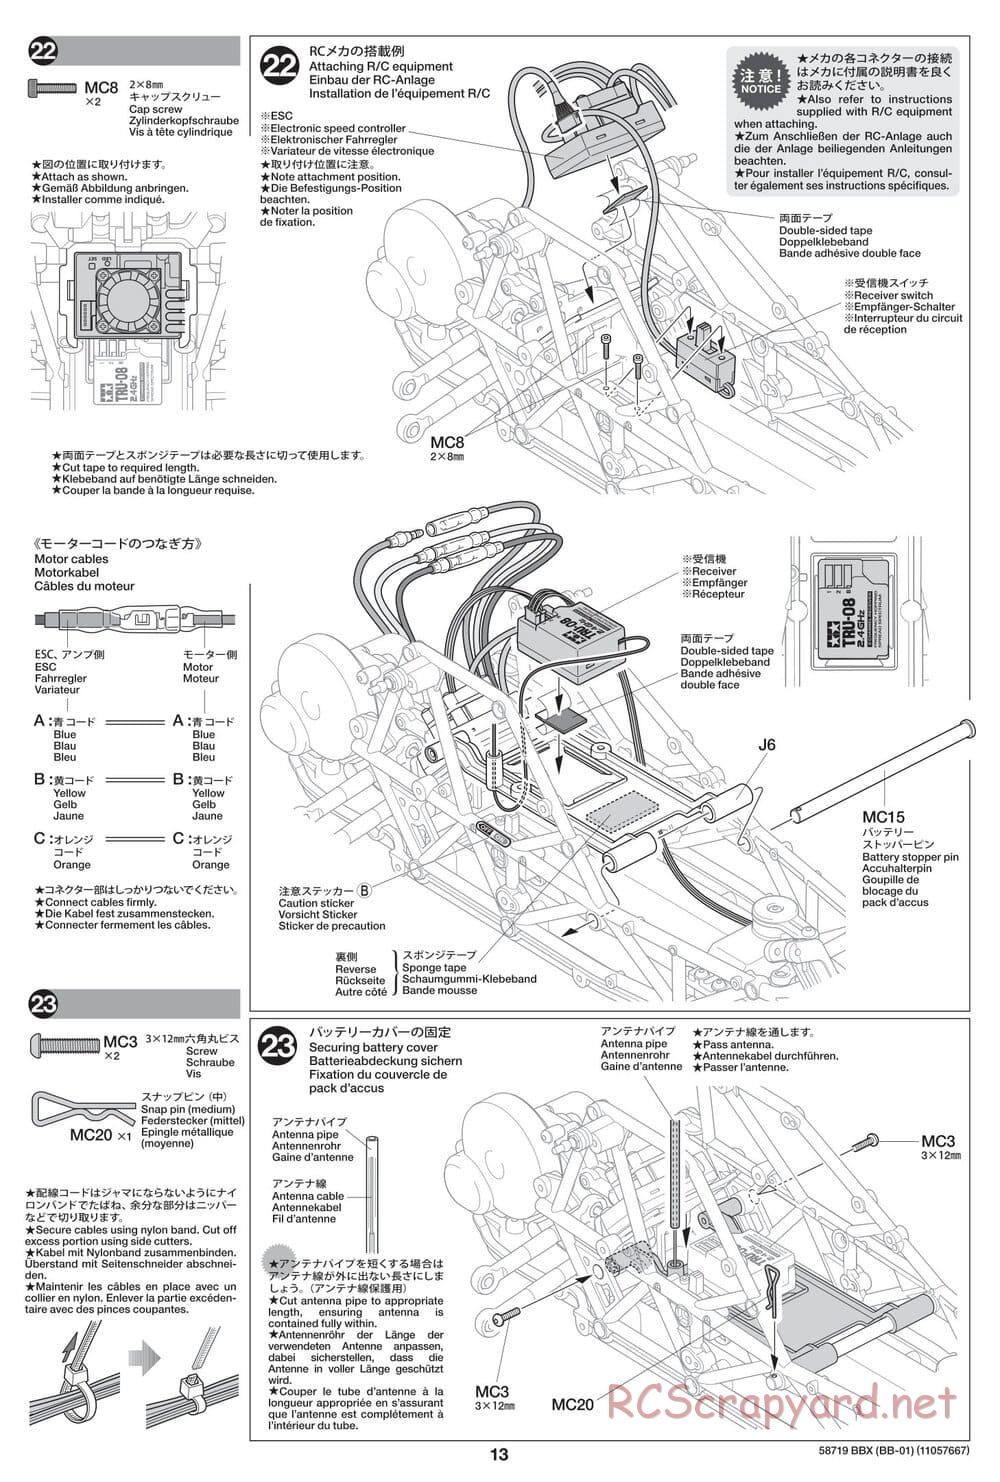 Tamiya - BBX - BB-01 Chassis - Manual - Page 13